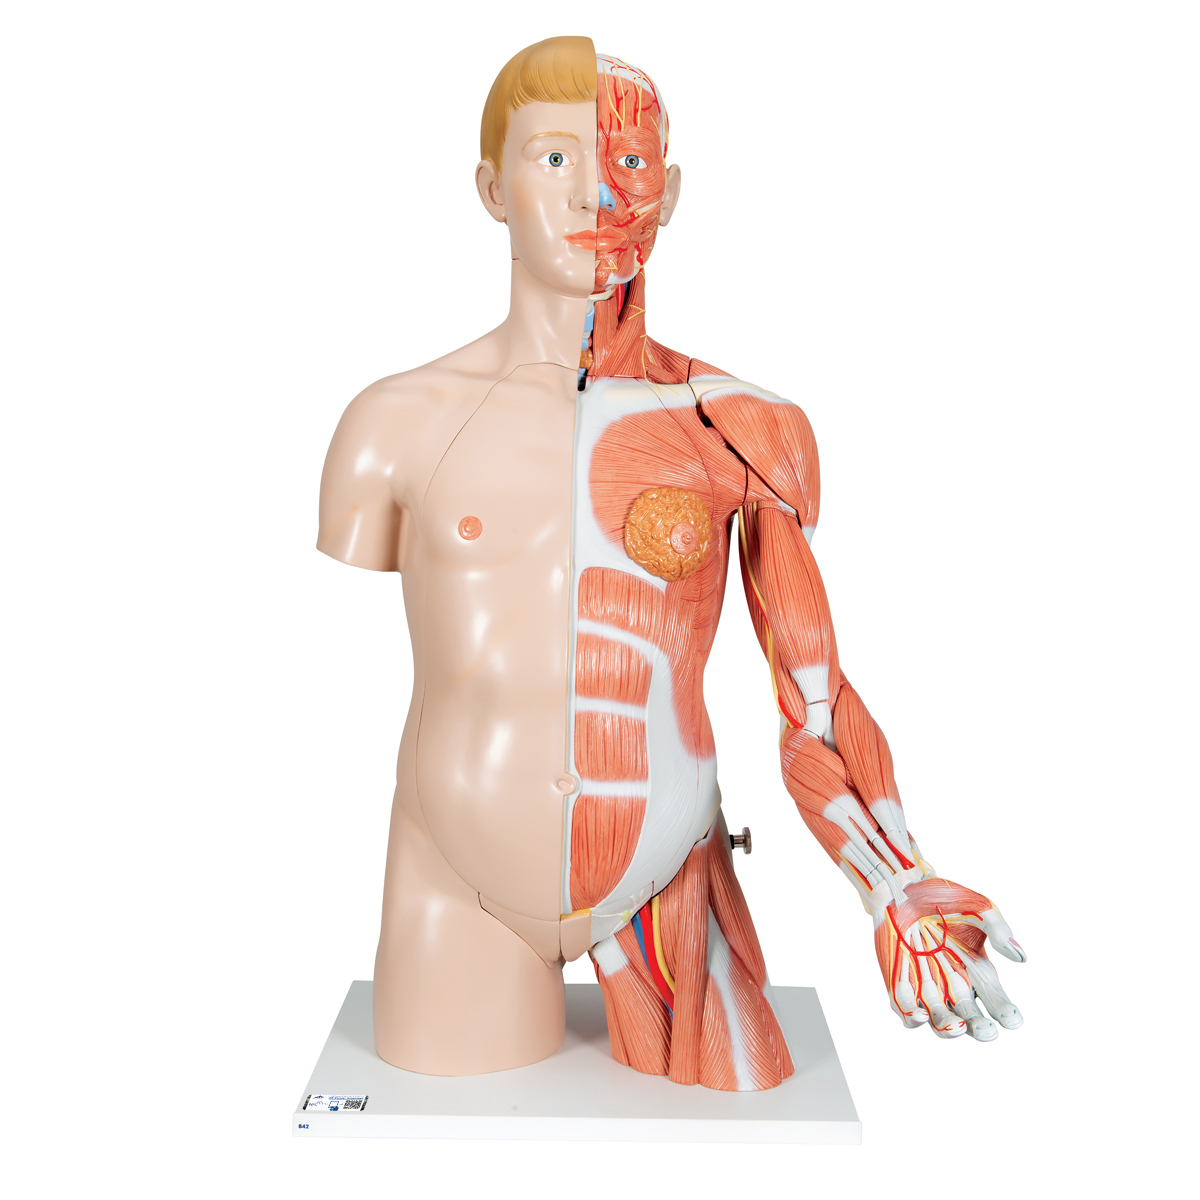 Luxus Torso Modell, mit weiblichen & männlichen Geschlechtsorganen und mit Muskelarm, 33-teilig - 3B Smart Anatomy, Bestellnummer 1000205, B42, 3B Scientific